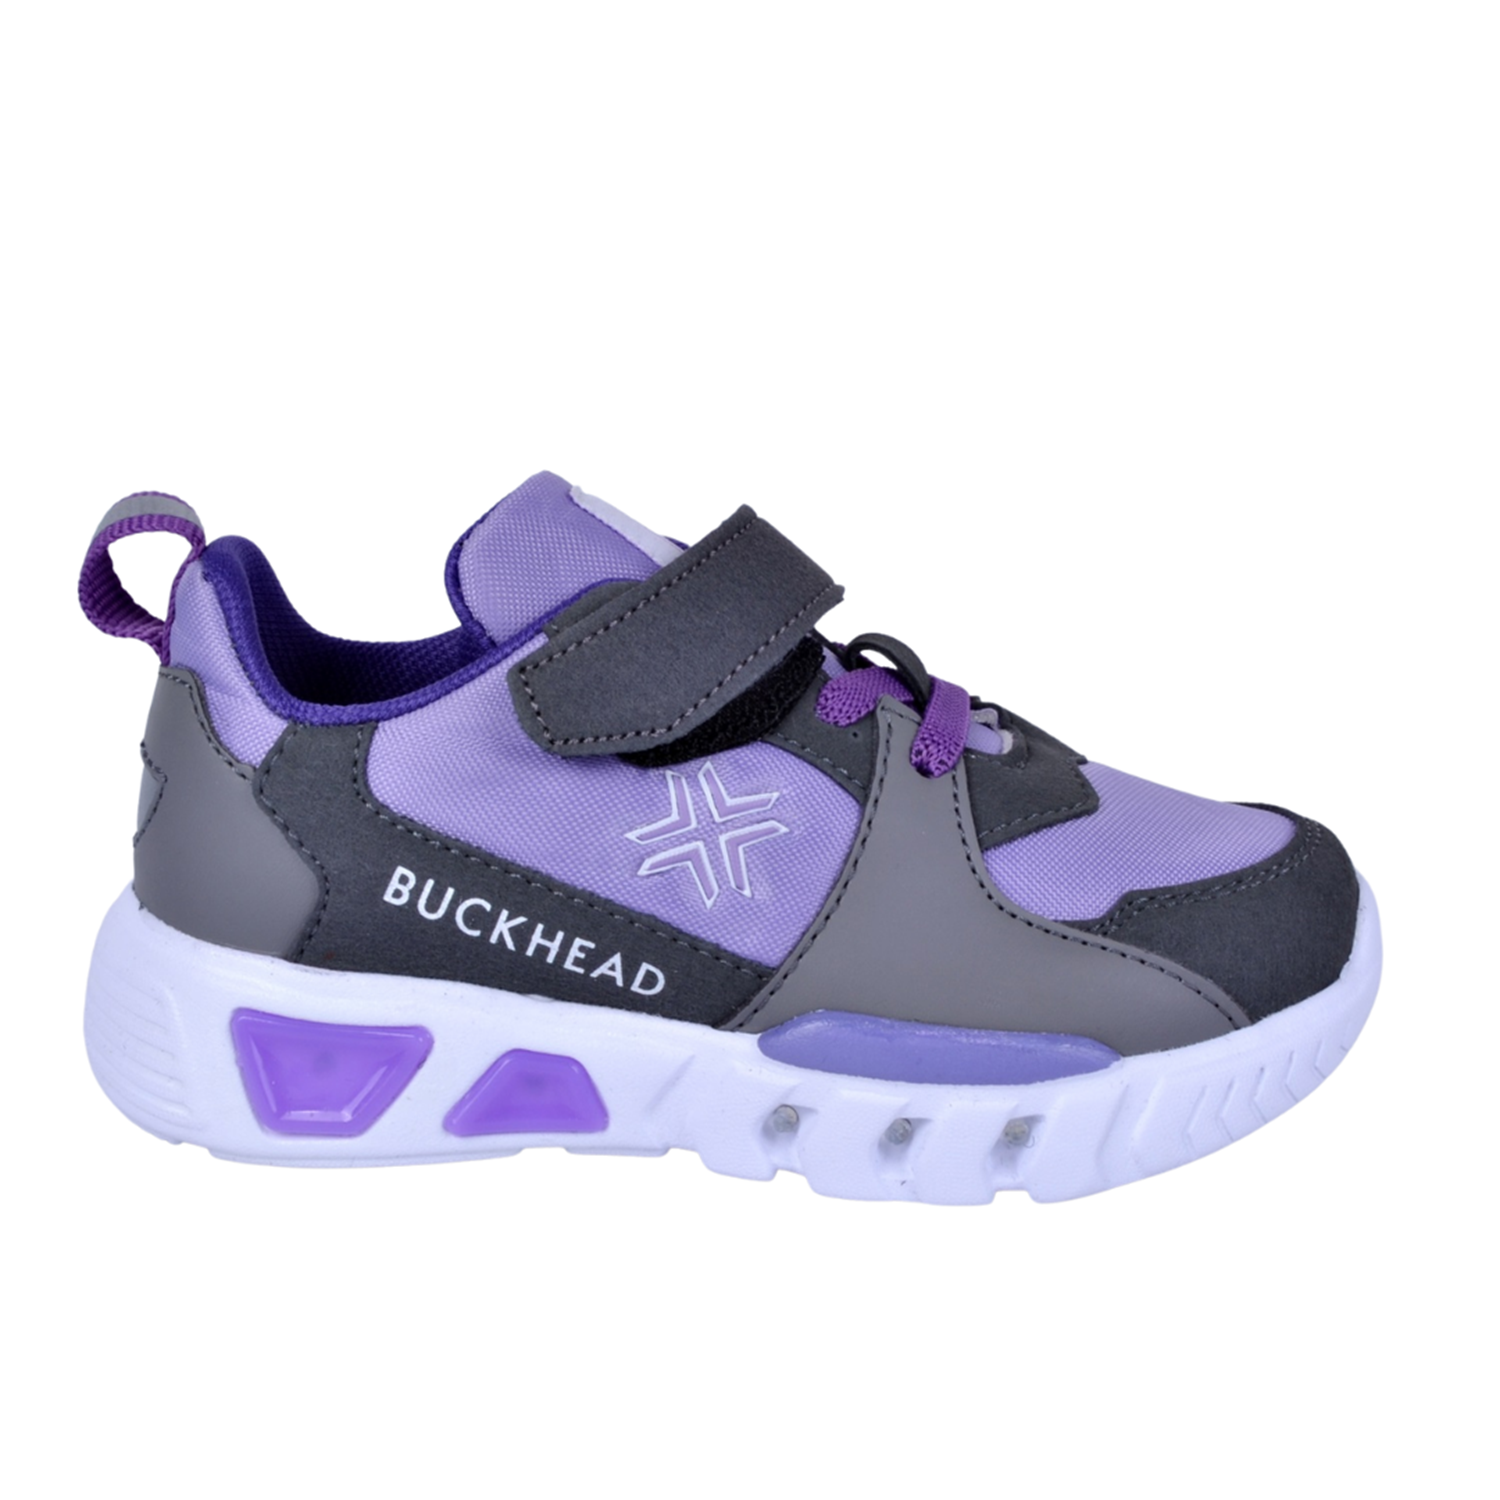 Buckhead 4054 Mor Işıklı Çocuk Spor Ayakkabı